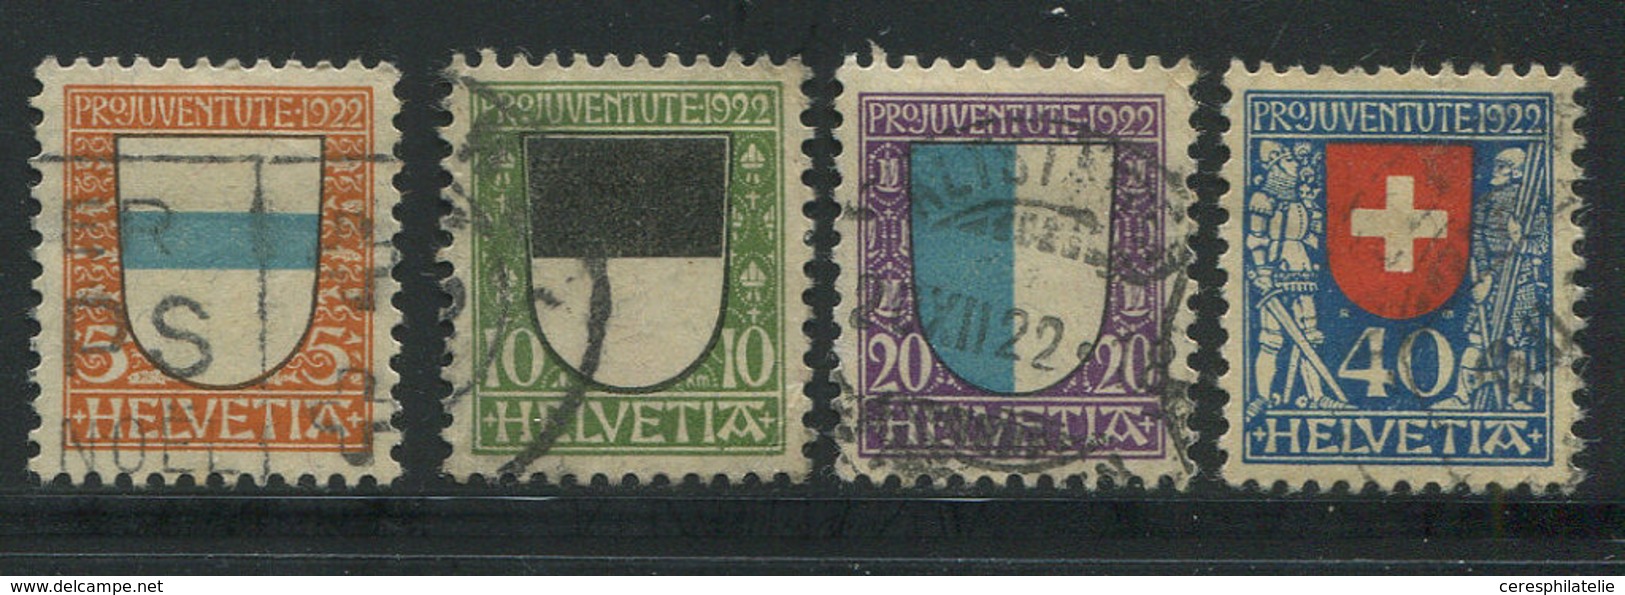 SUISSE 188/91 : La Série Obl., TB - 1843-1852 Federal & Cantonal Stamps